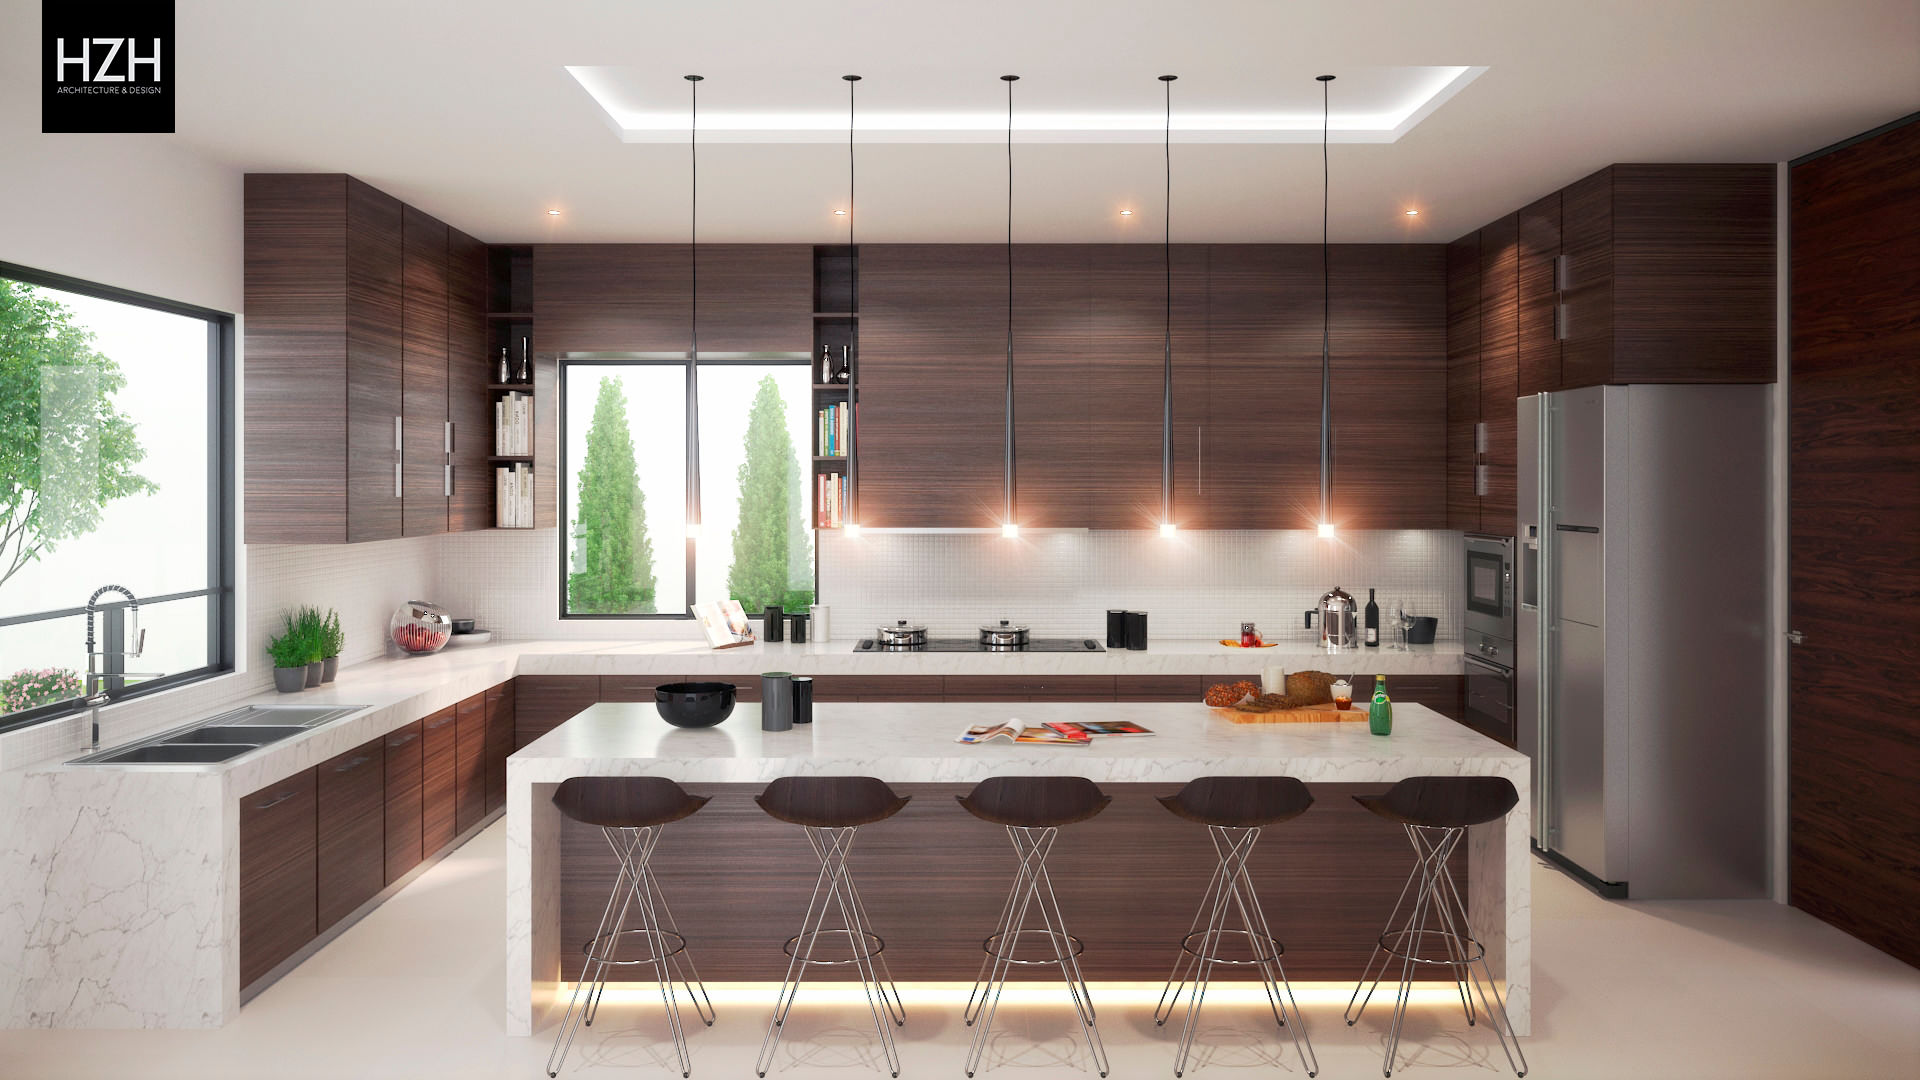 Residencia Contry La Silla, HZH Arquitectura & Diseño HZH Arquitectura & Diseño Moderne keukens